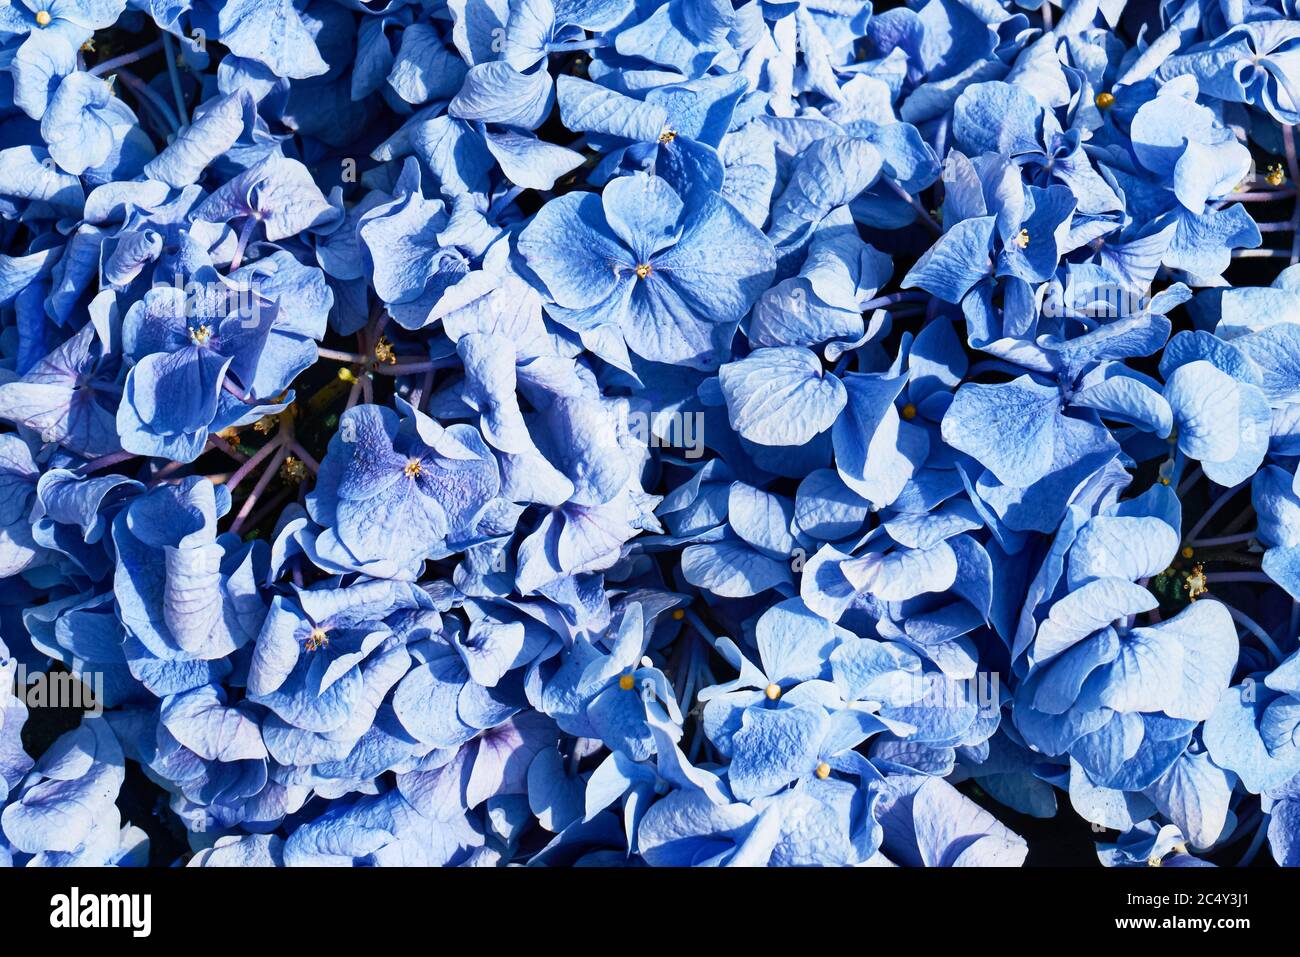 Schöne blaue Hydrangea (Hydrangea macrophylla) oder Hortensia Blume Hintergrund. Draufsicht Stockfoto